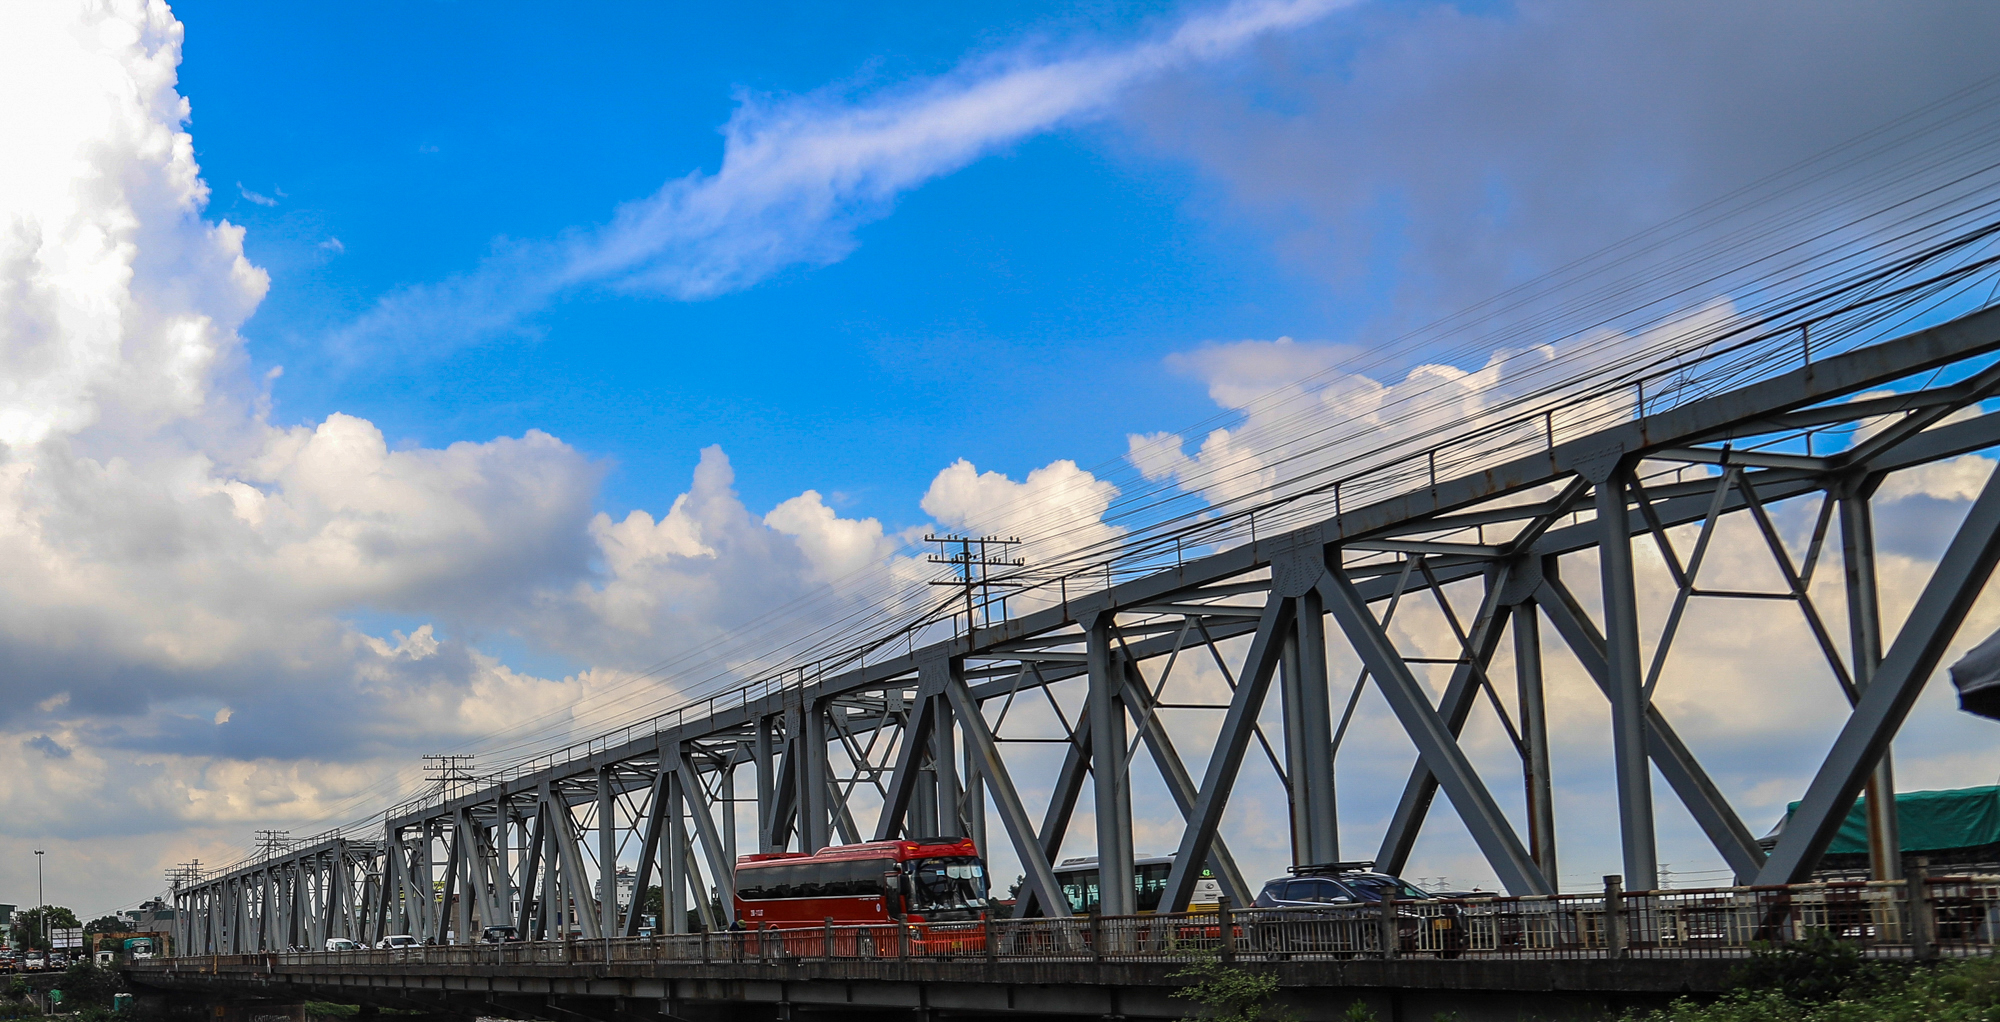 Cầu quay đầu tiên ở Việt Nam, ra đời trước cầu sông Hàn gần 100 năm - Ảnh 8.